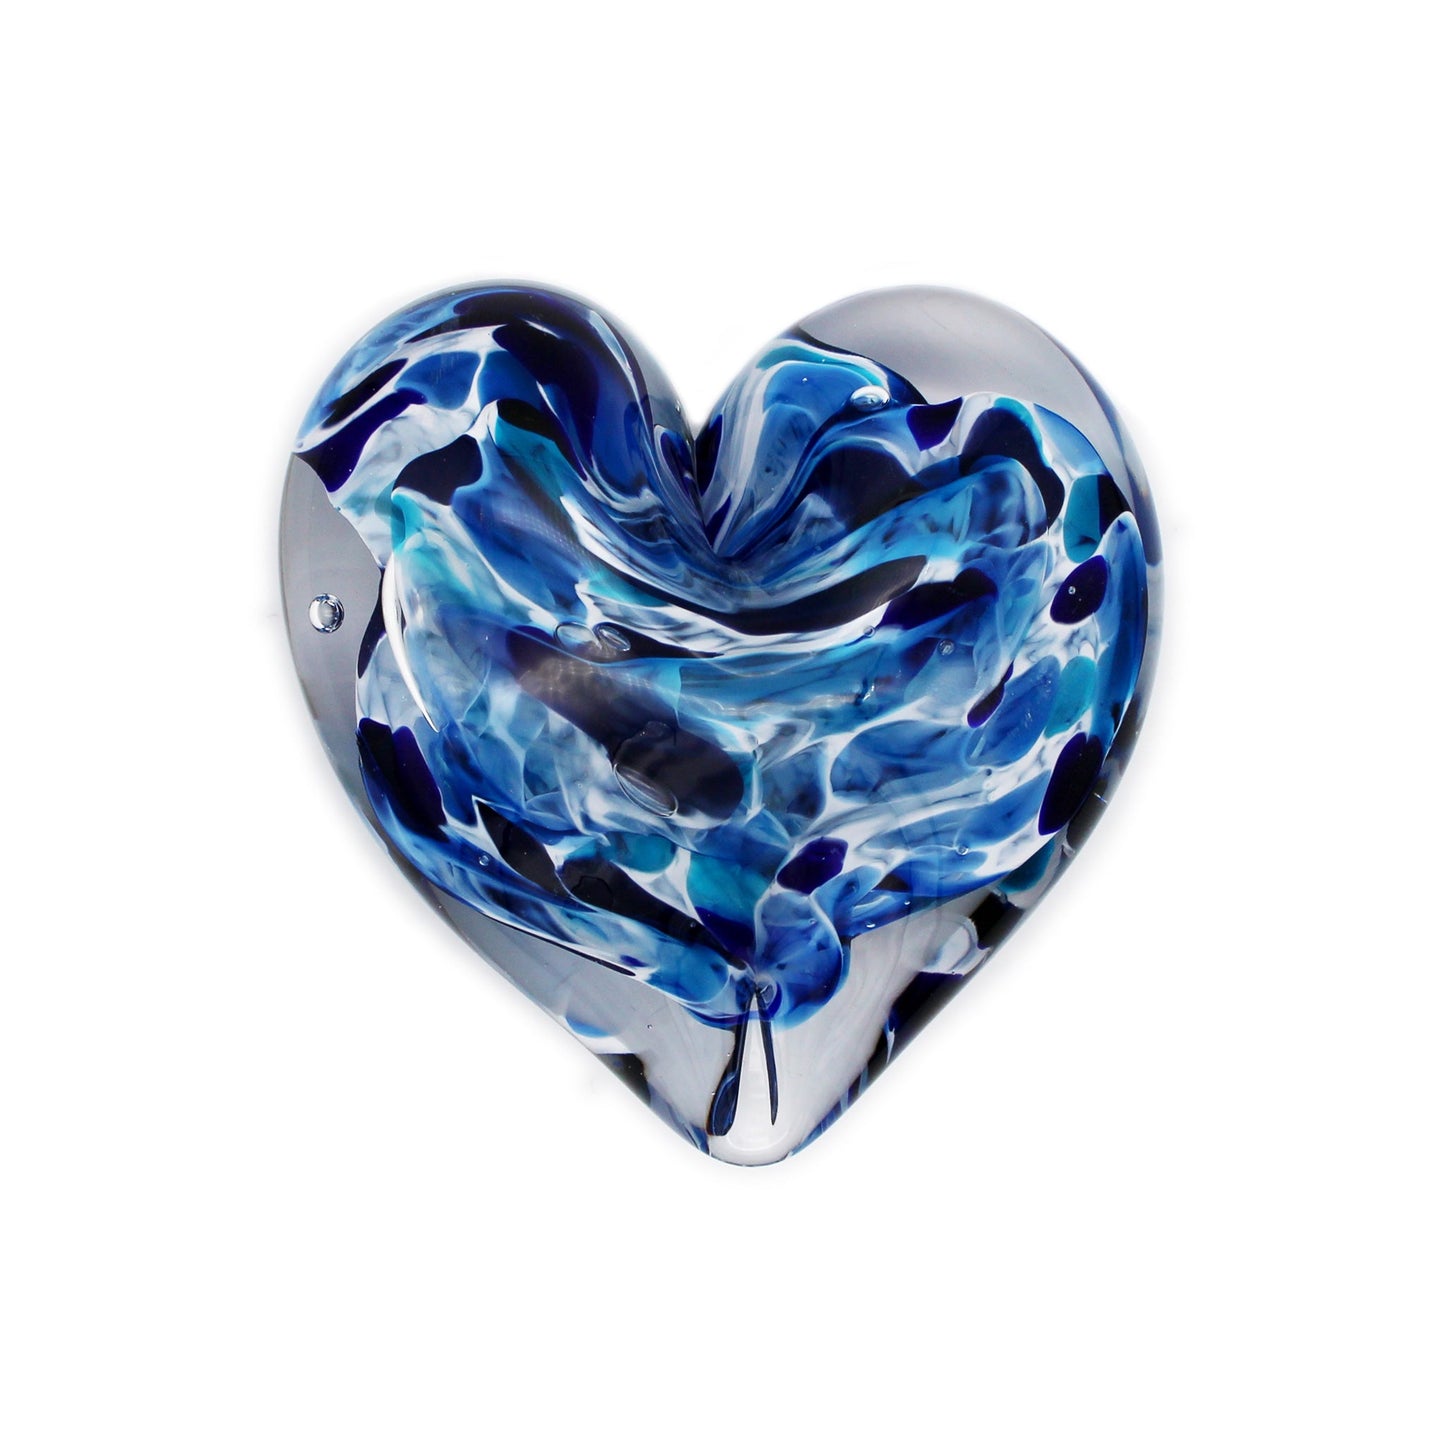 Glass Heart Paperweight: Blue Mix